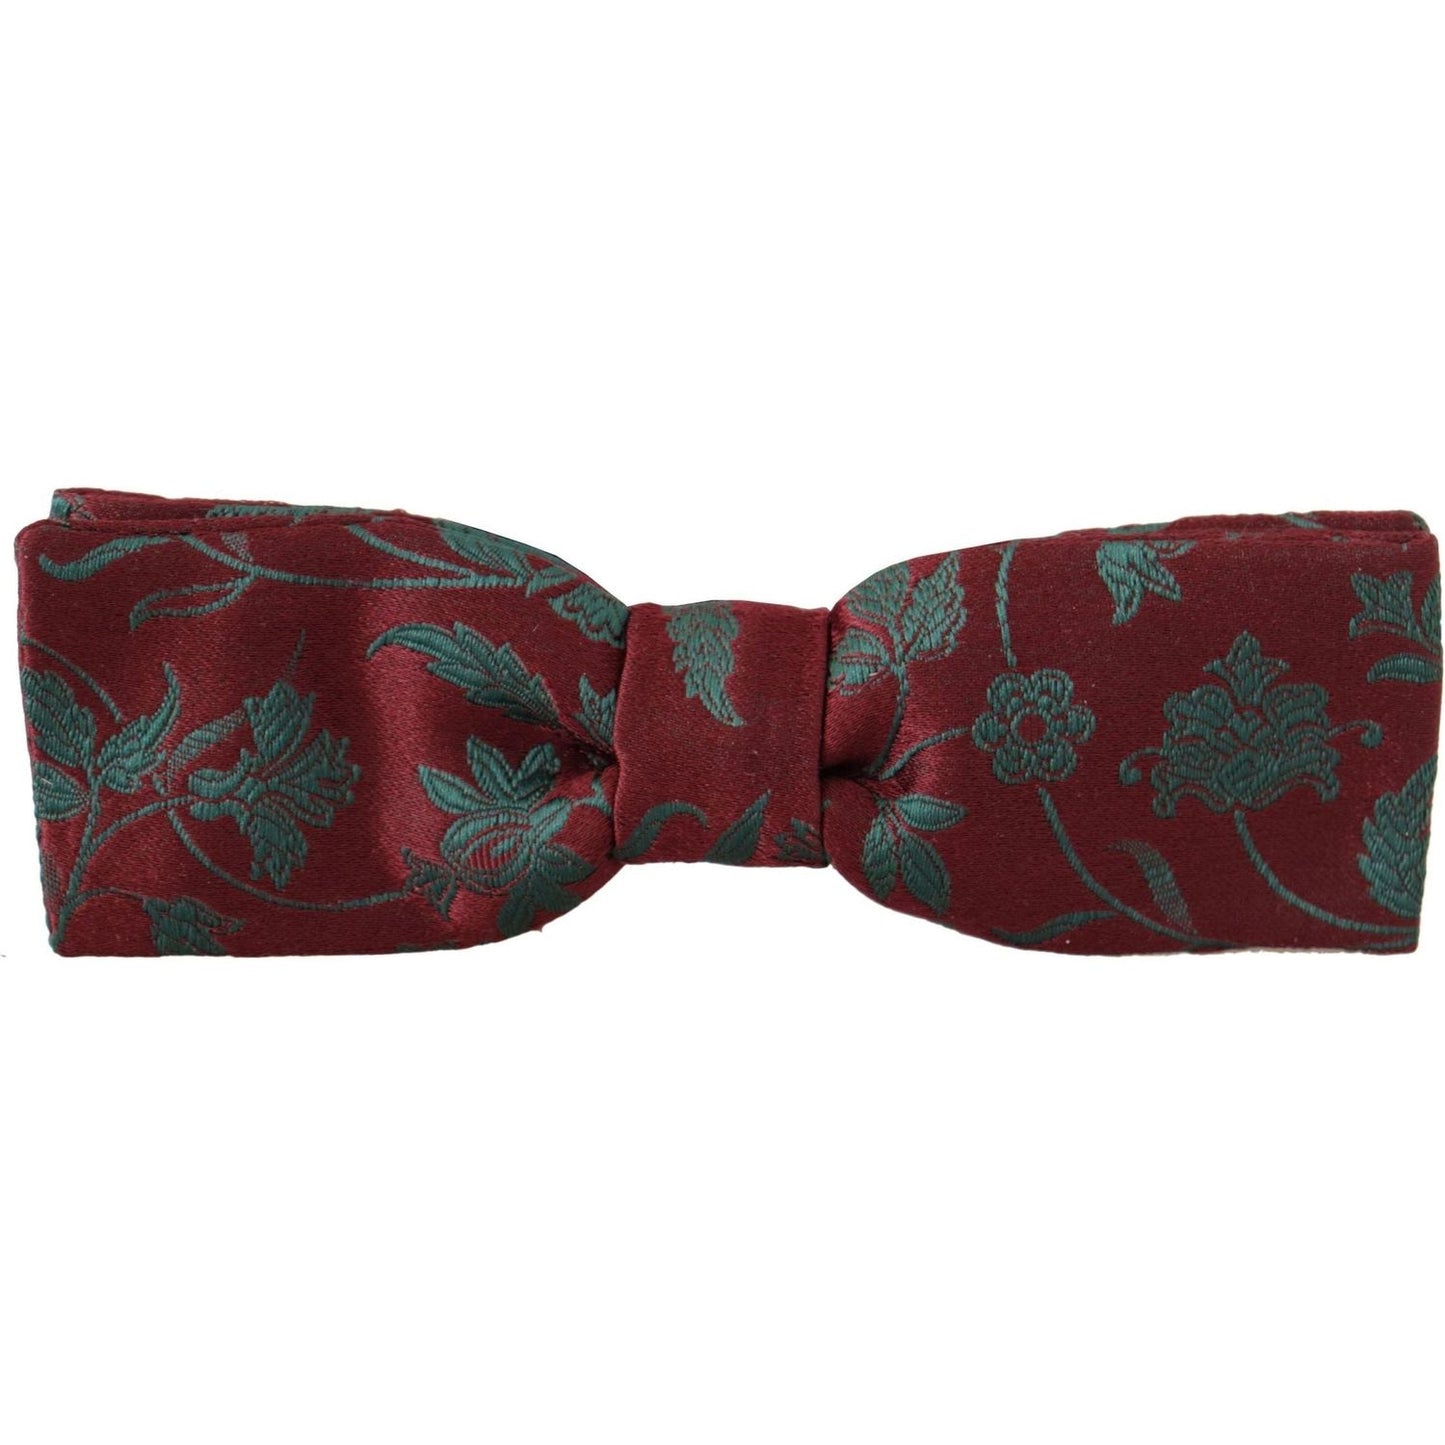 Elegant Maroon Patterned Bow Tie